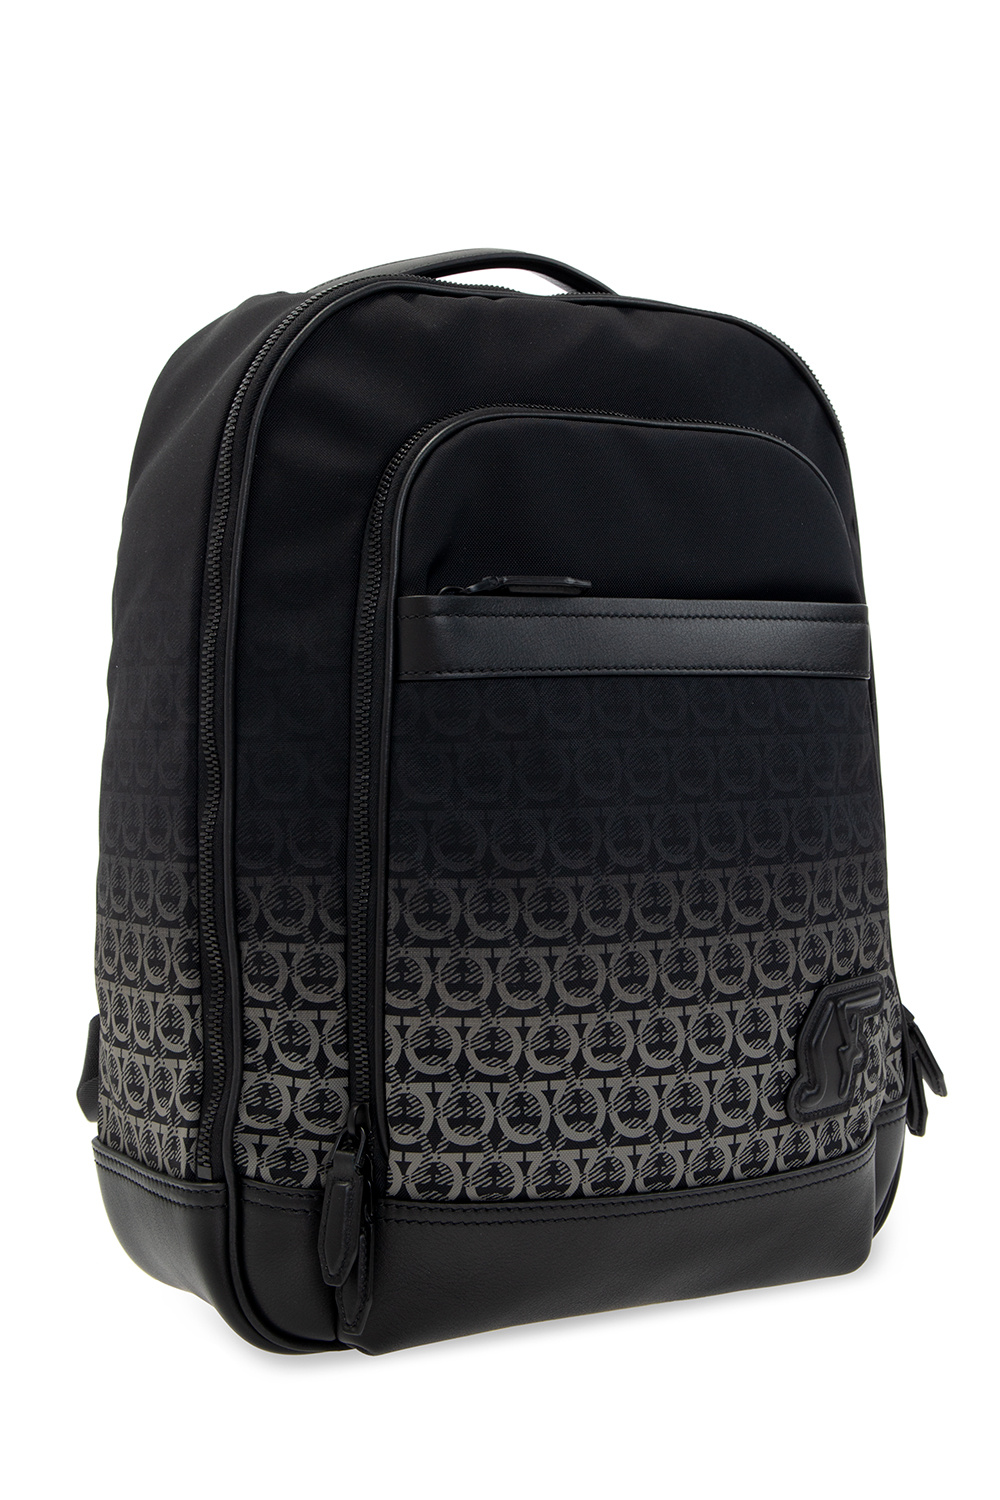 Salvatore Ferragamo ‘Nylon SF’ backpack with logo